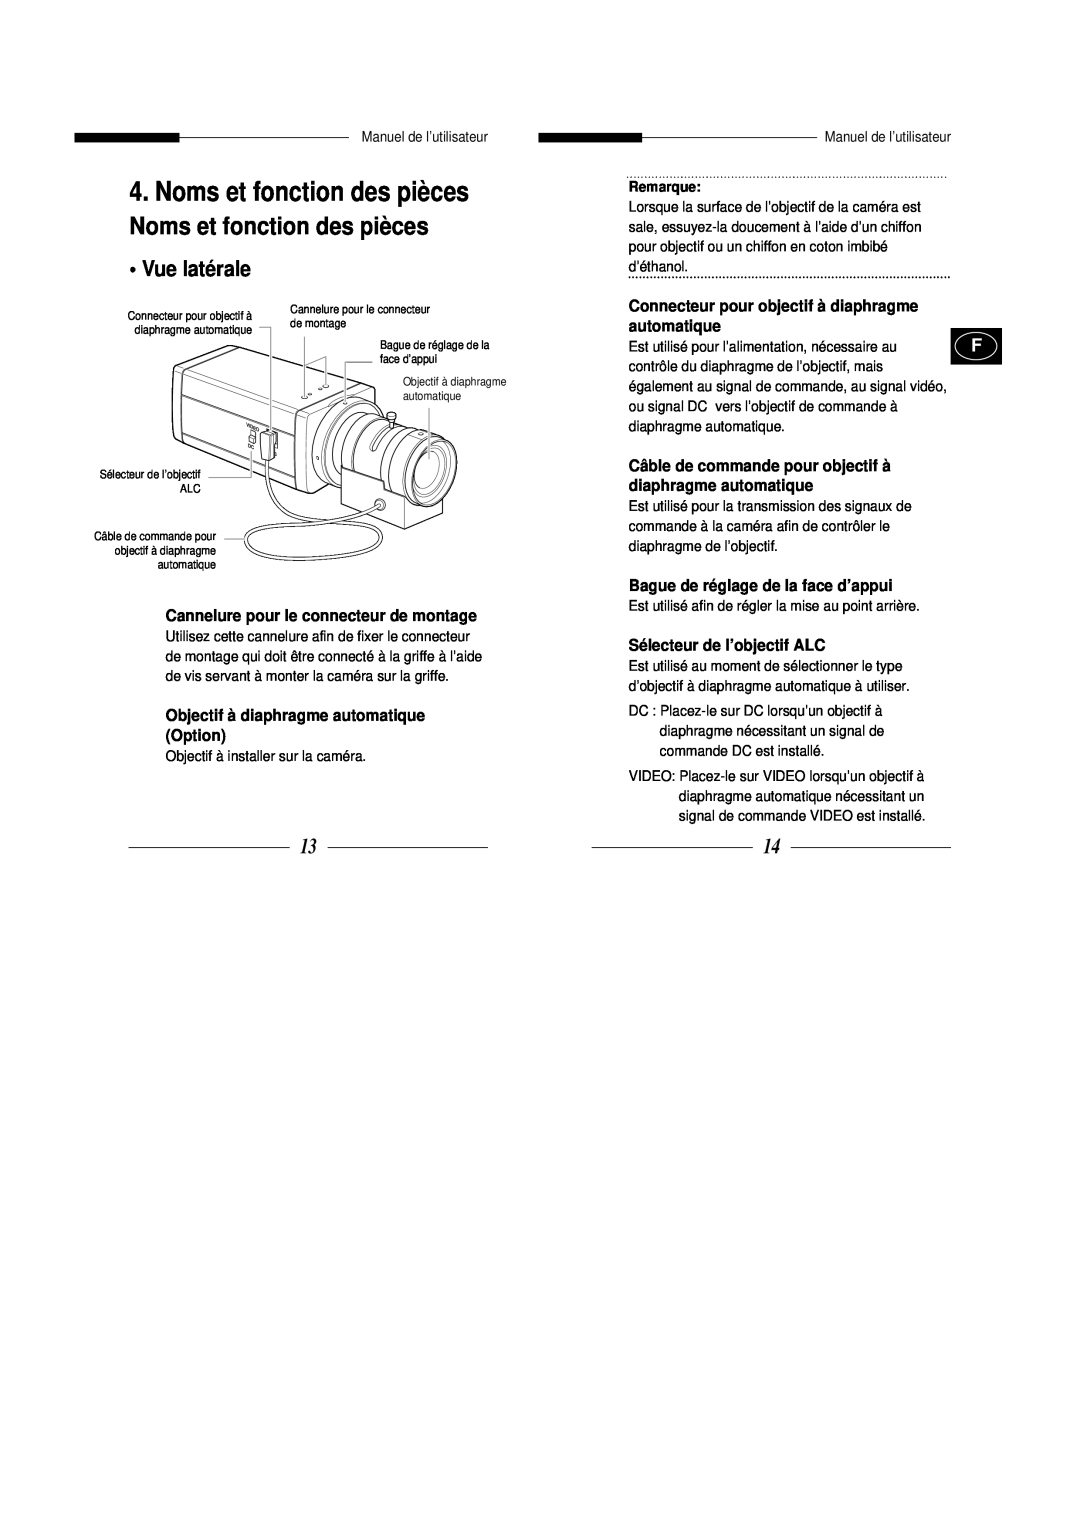 Samsung SBC-331AP/XEV manual Noms et fonction des pièces, Vue latérale, Connecteur pour objectif à diaphragme automatique 